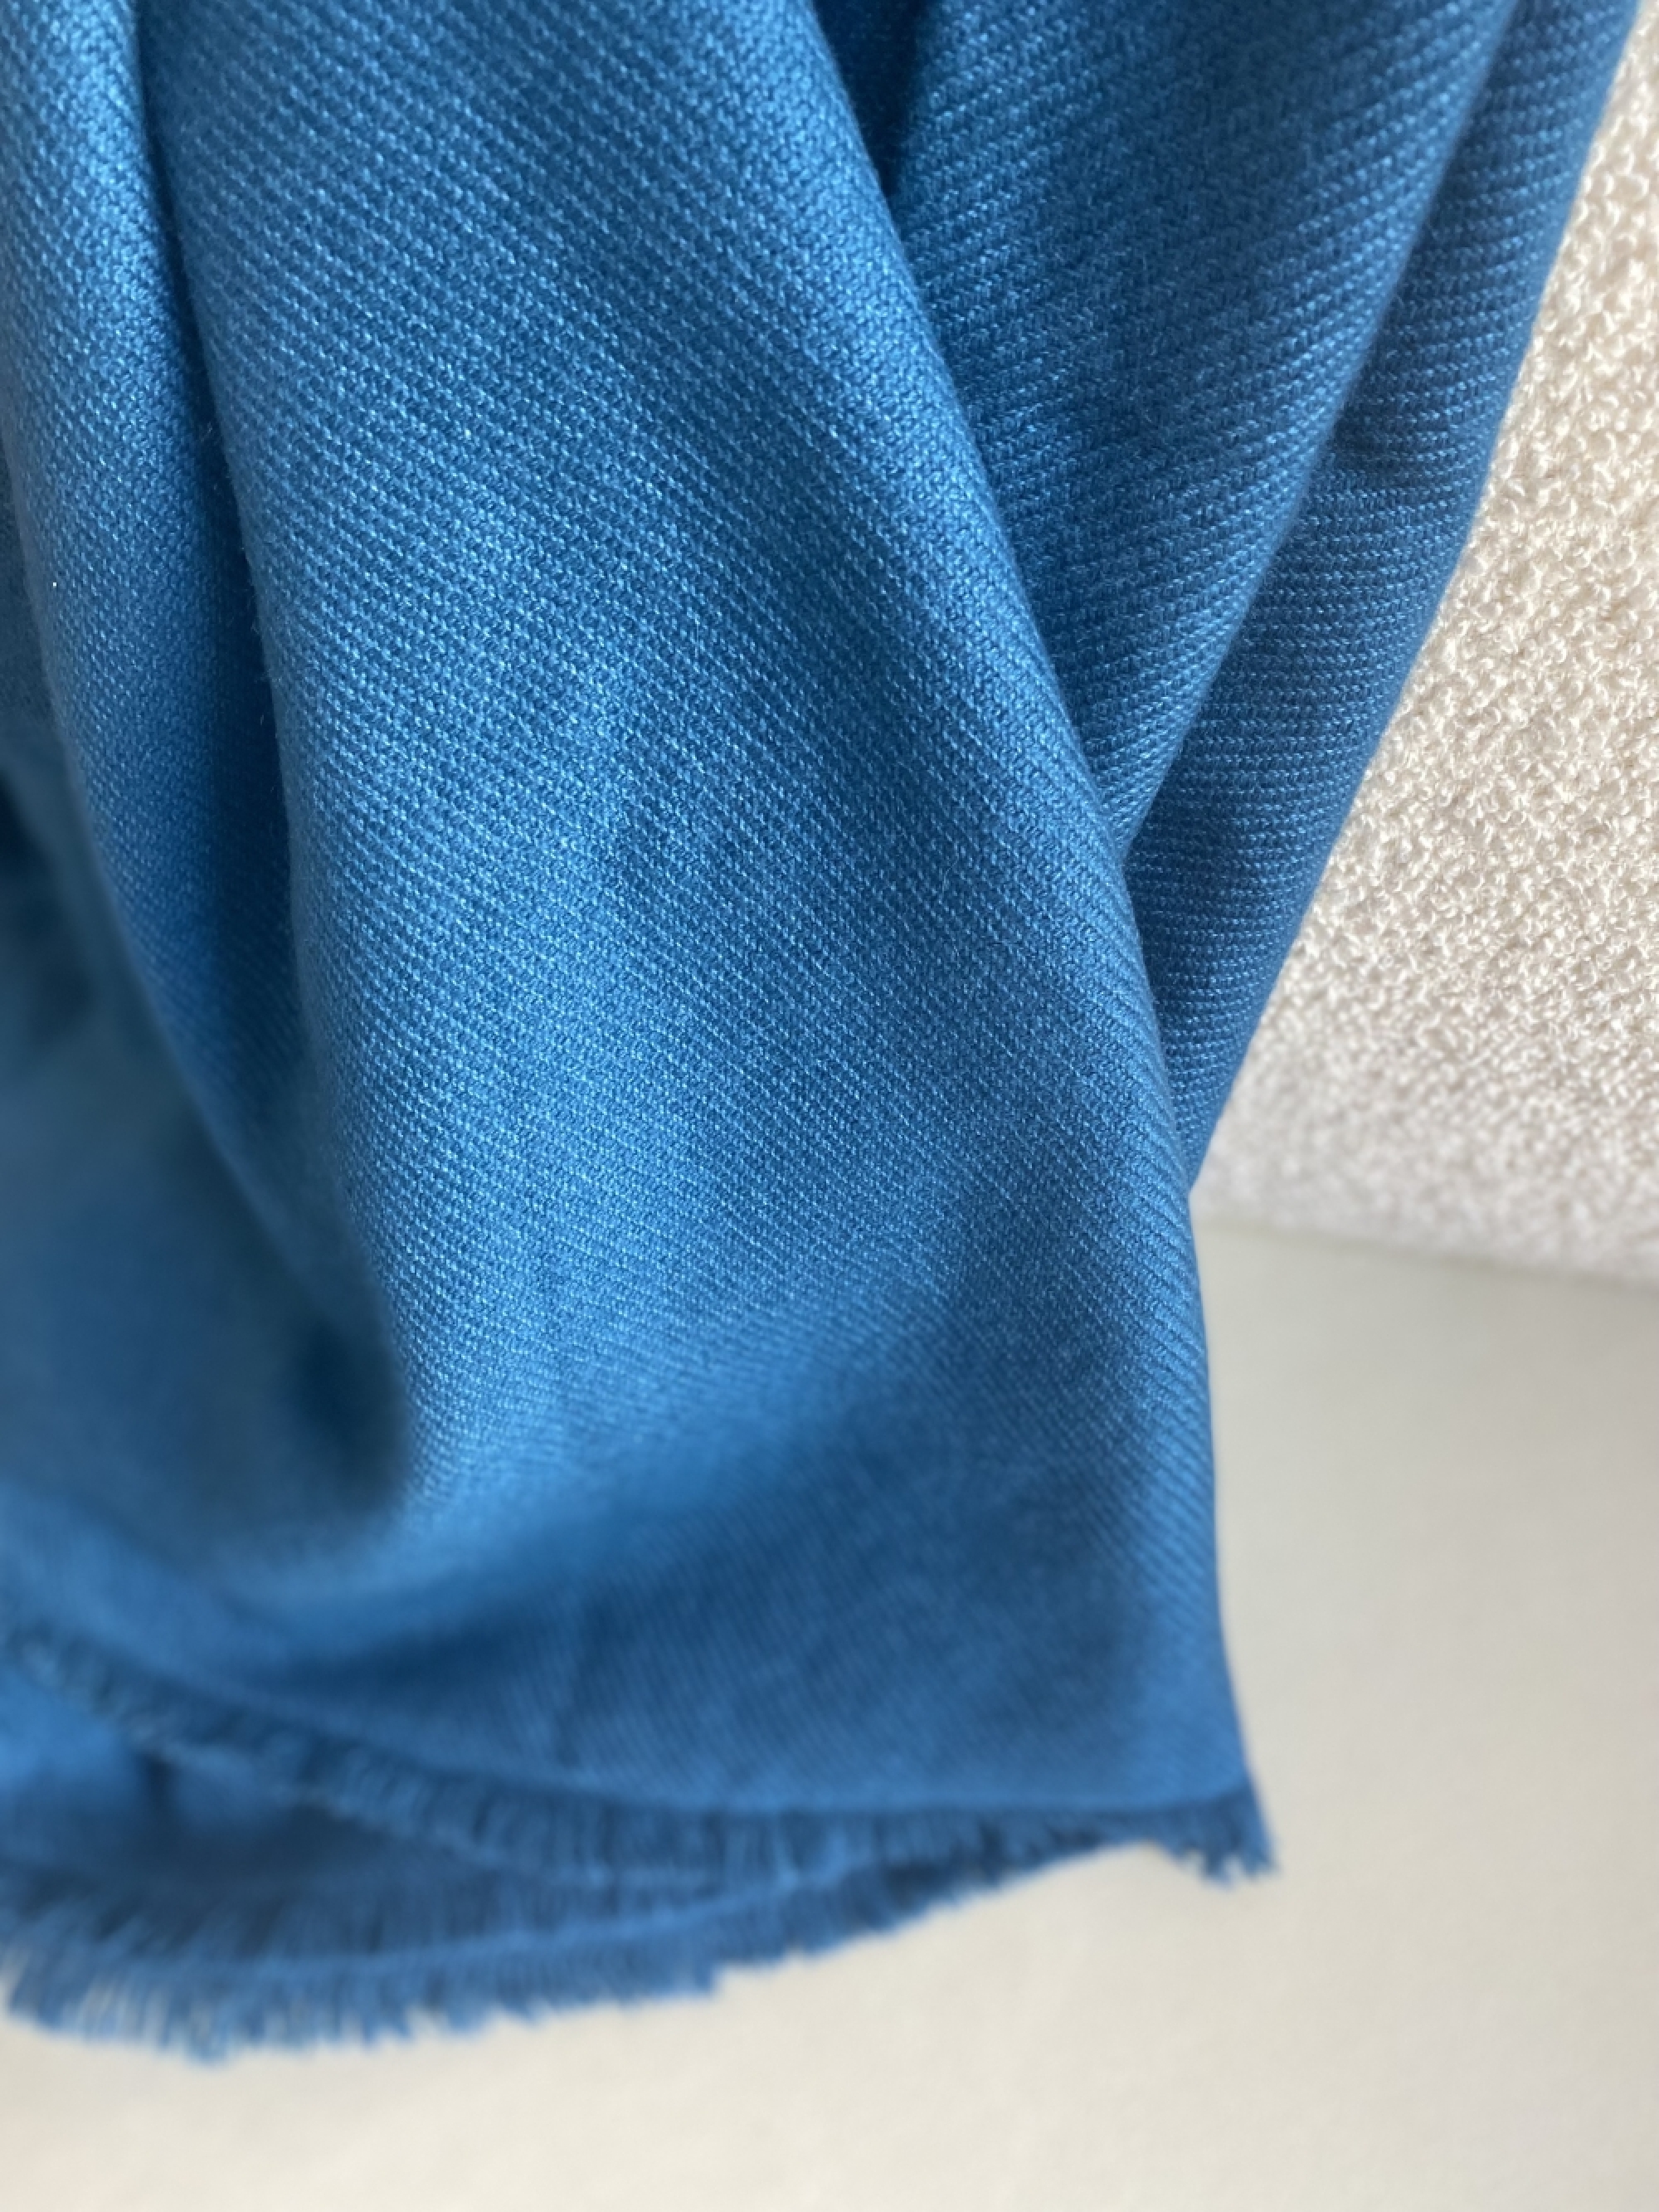 Cashmere accessoires toodoo plain m 180 x 220 leuchtendes blau 180 x 220 cm